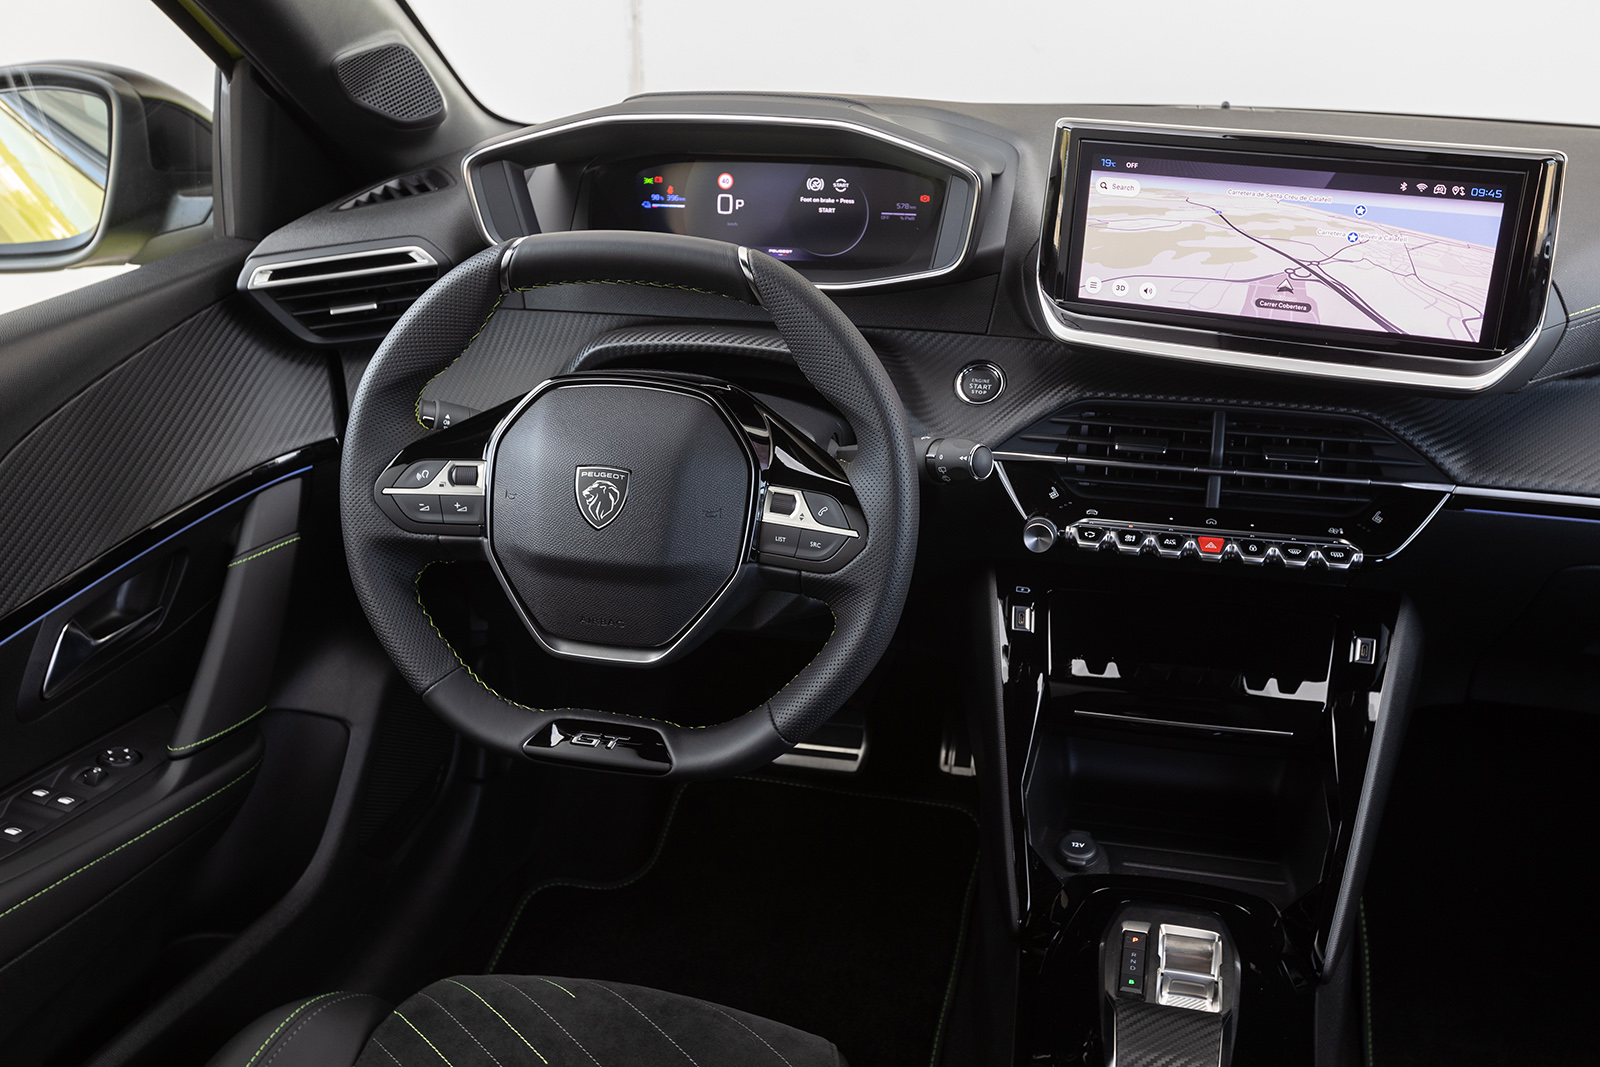 Peugeot e-208 steering wheel